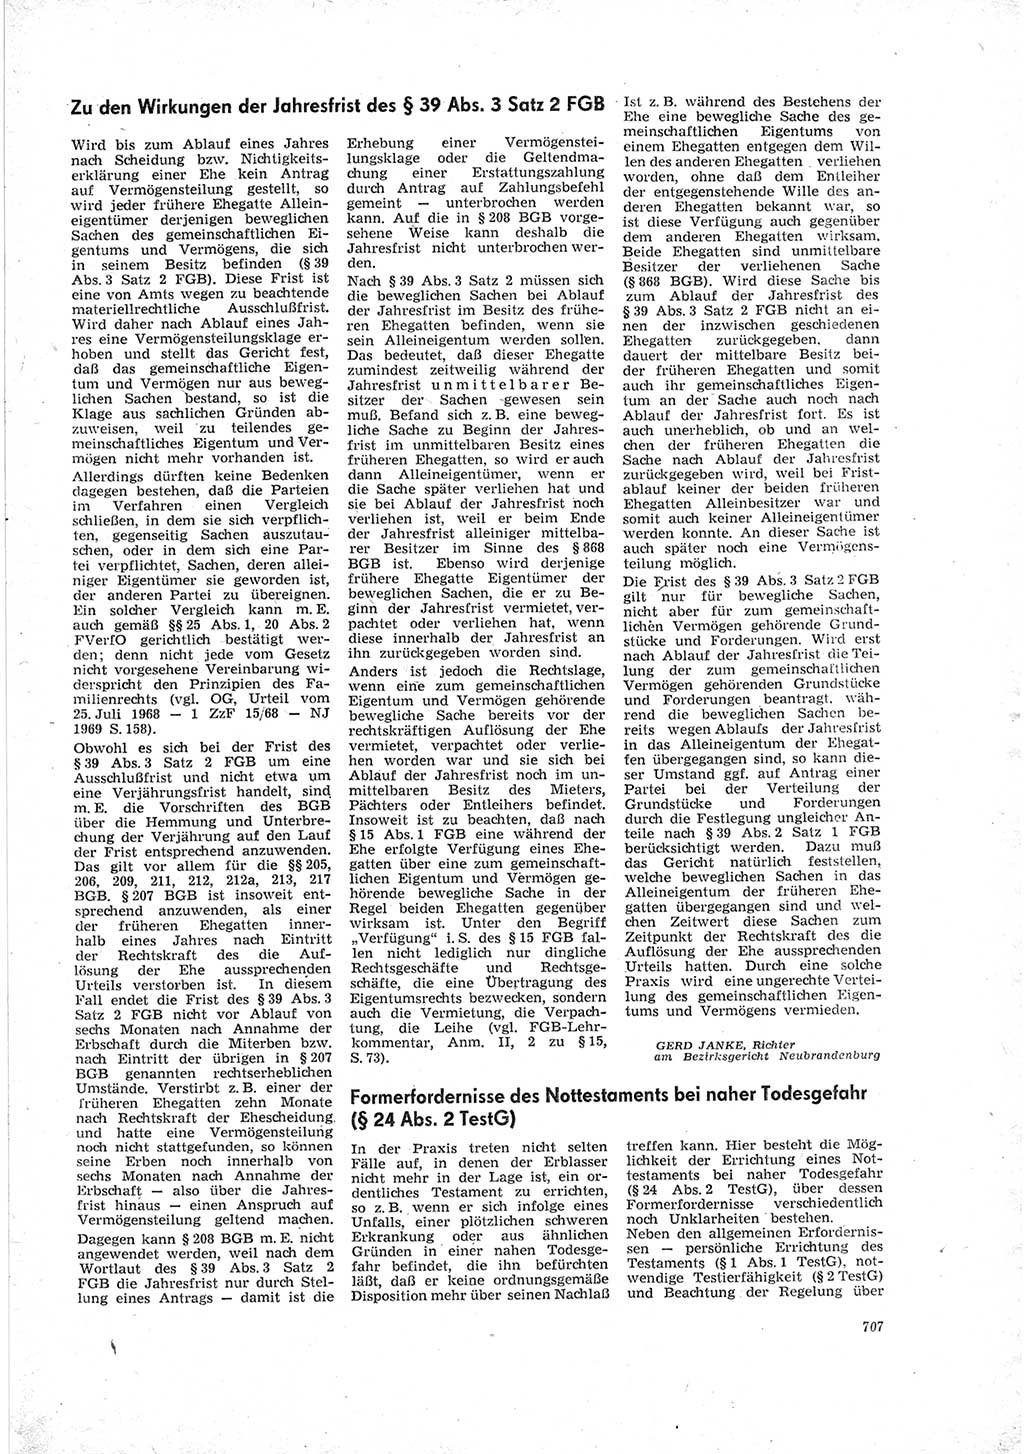 Neue Justiz (NJ), Zeitschrift für Recht und Rechtswissenschaft [Deutsche Demokratische Republik (DDR)], 23. Jahrgang 1969, Seite 707 (NJ DDR 1969, S. 707)